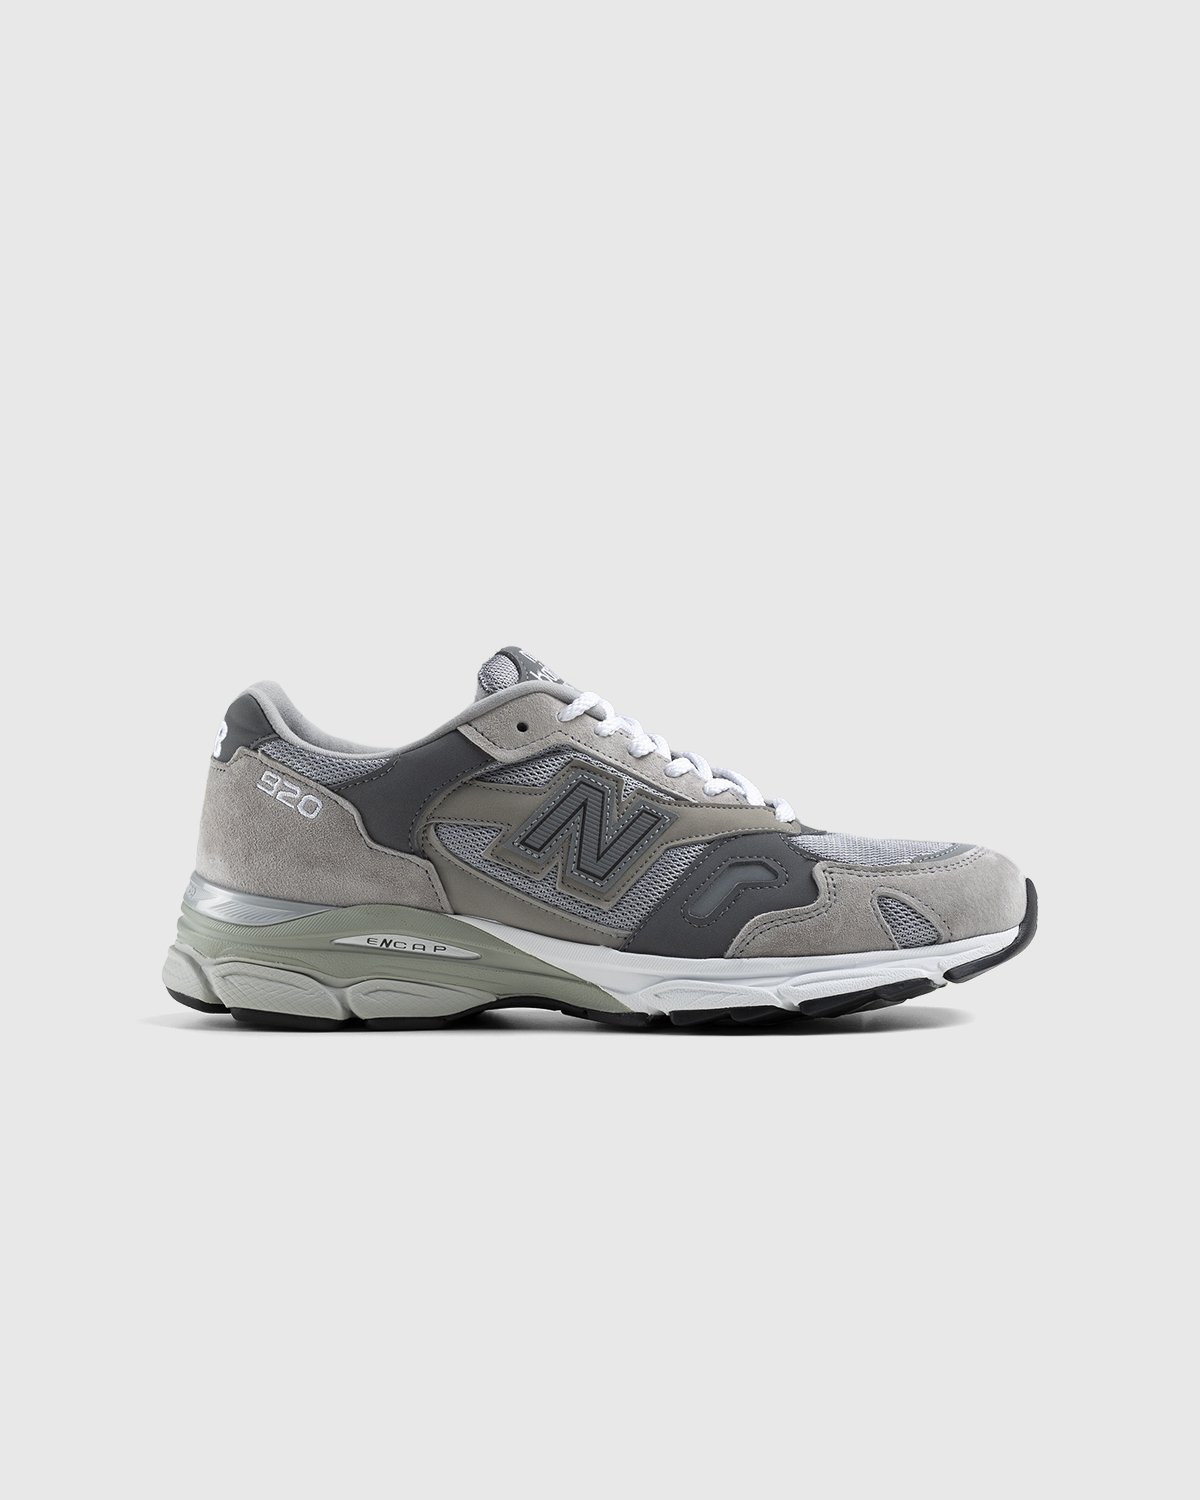 New Balance - M920GRY Grey - Footwear - Grey - Image 1